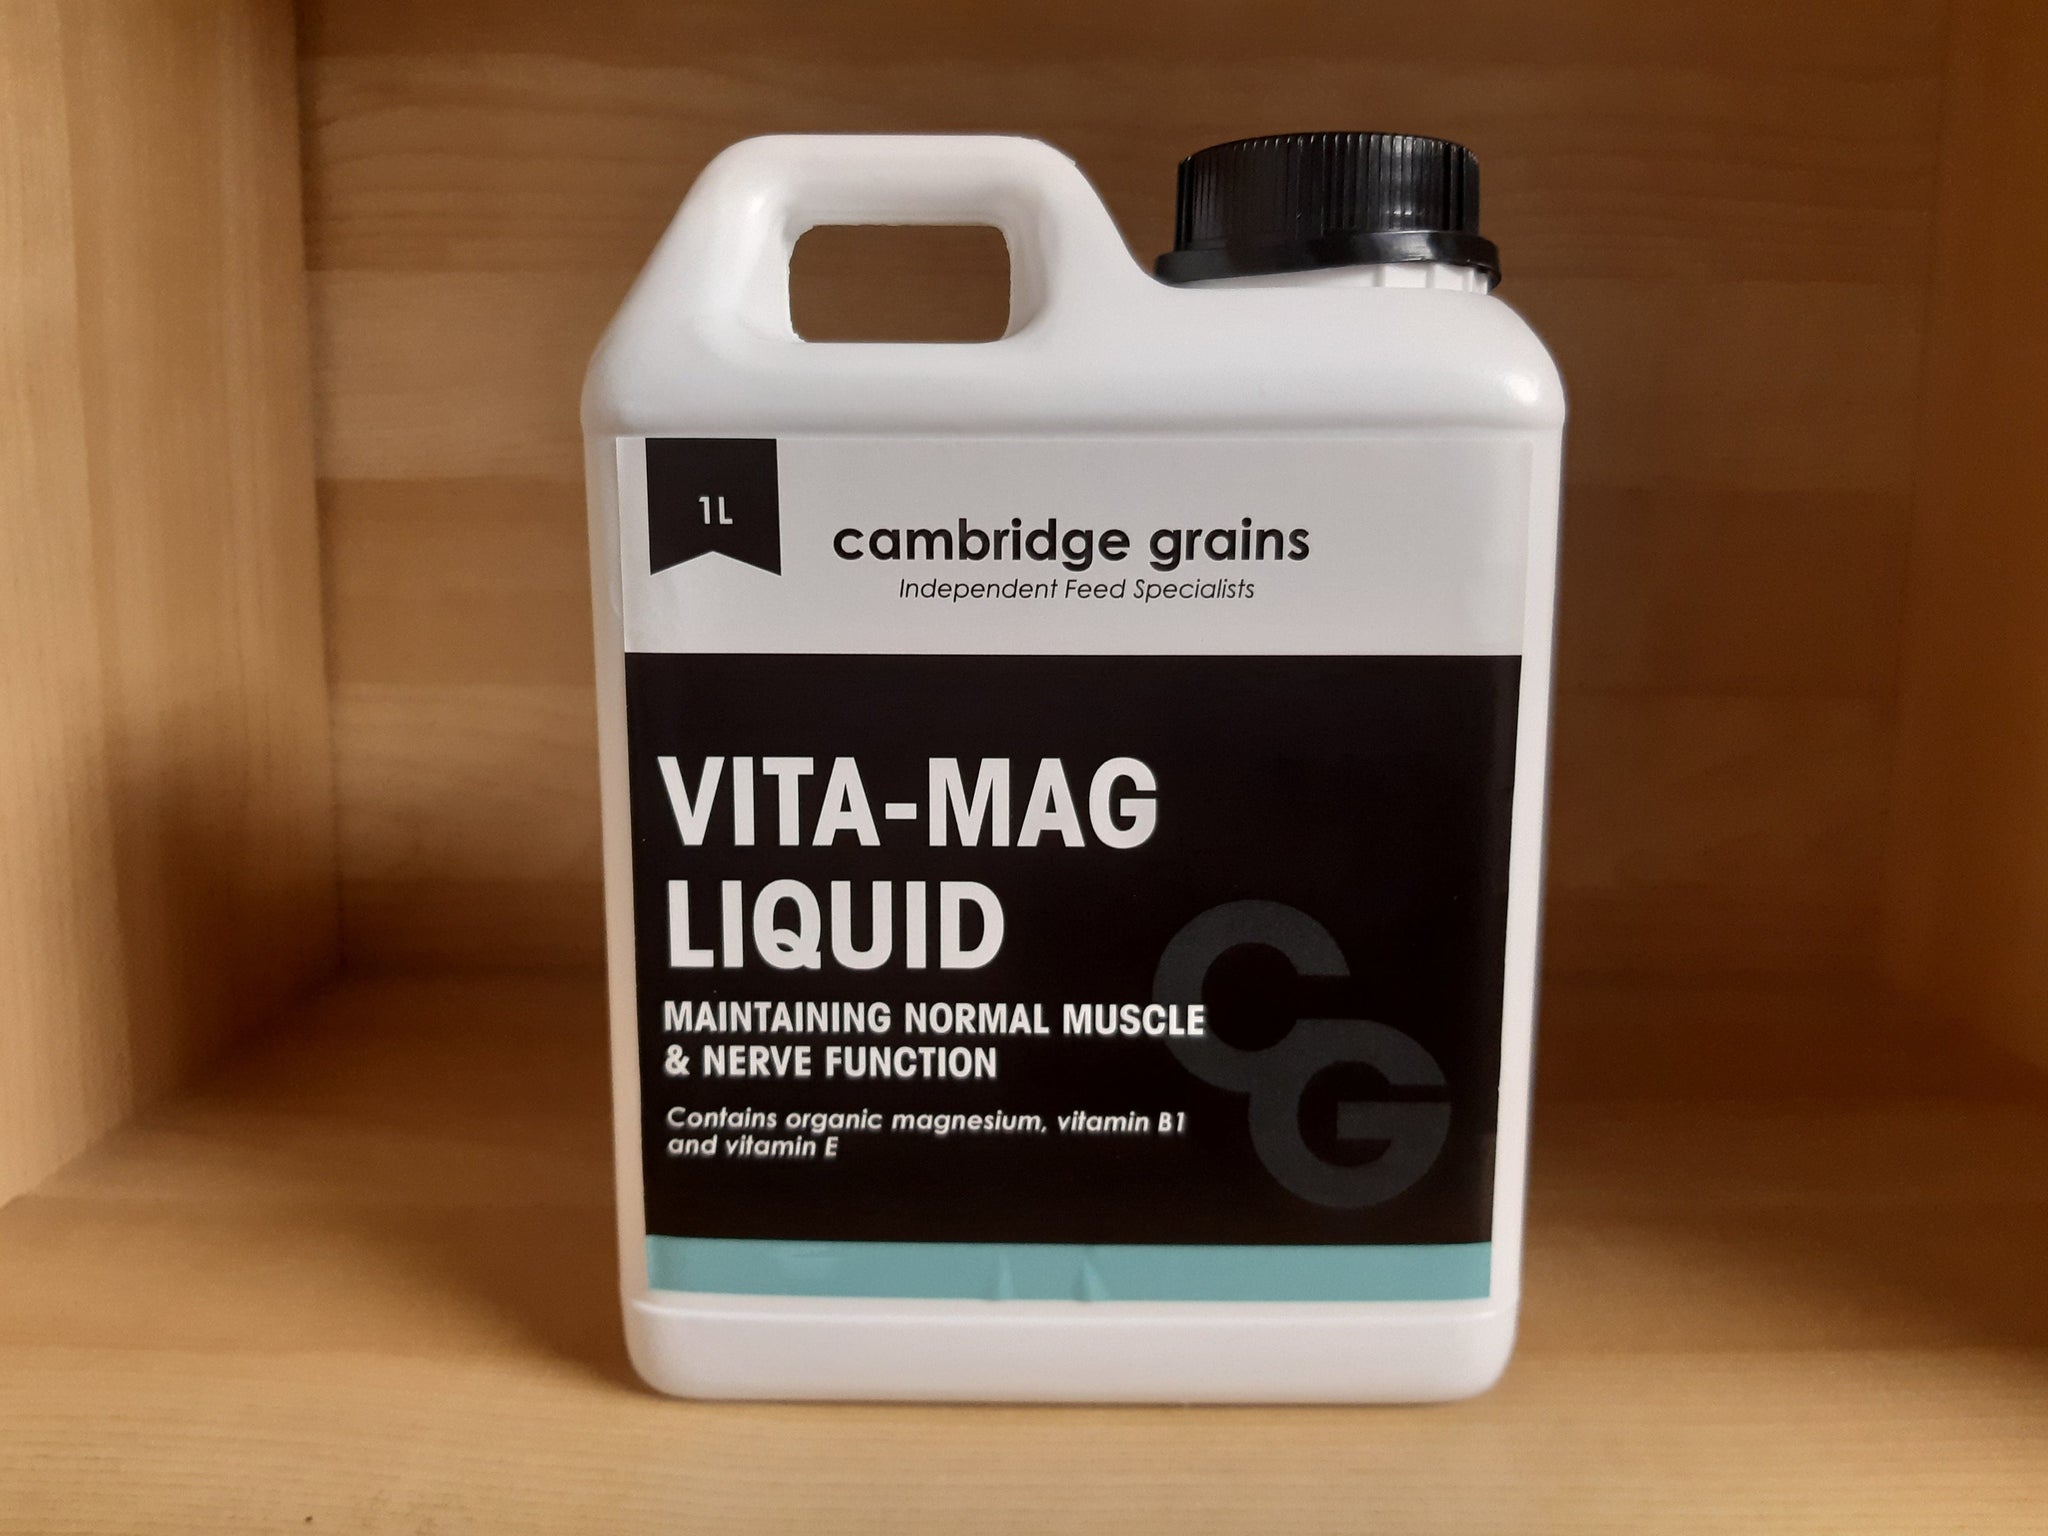 Vita-Mag Liquid